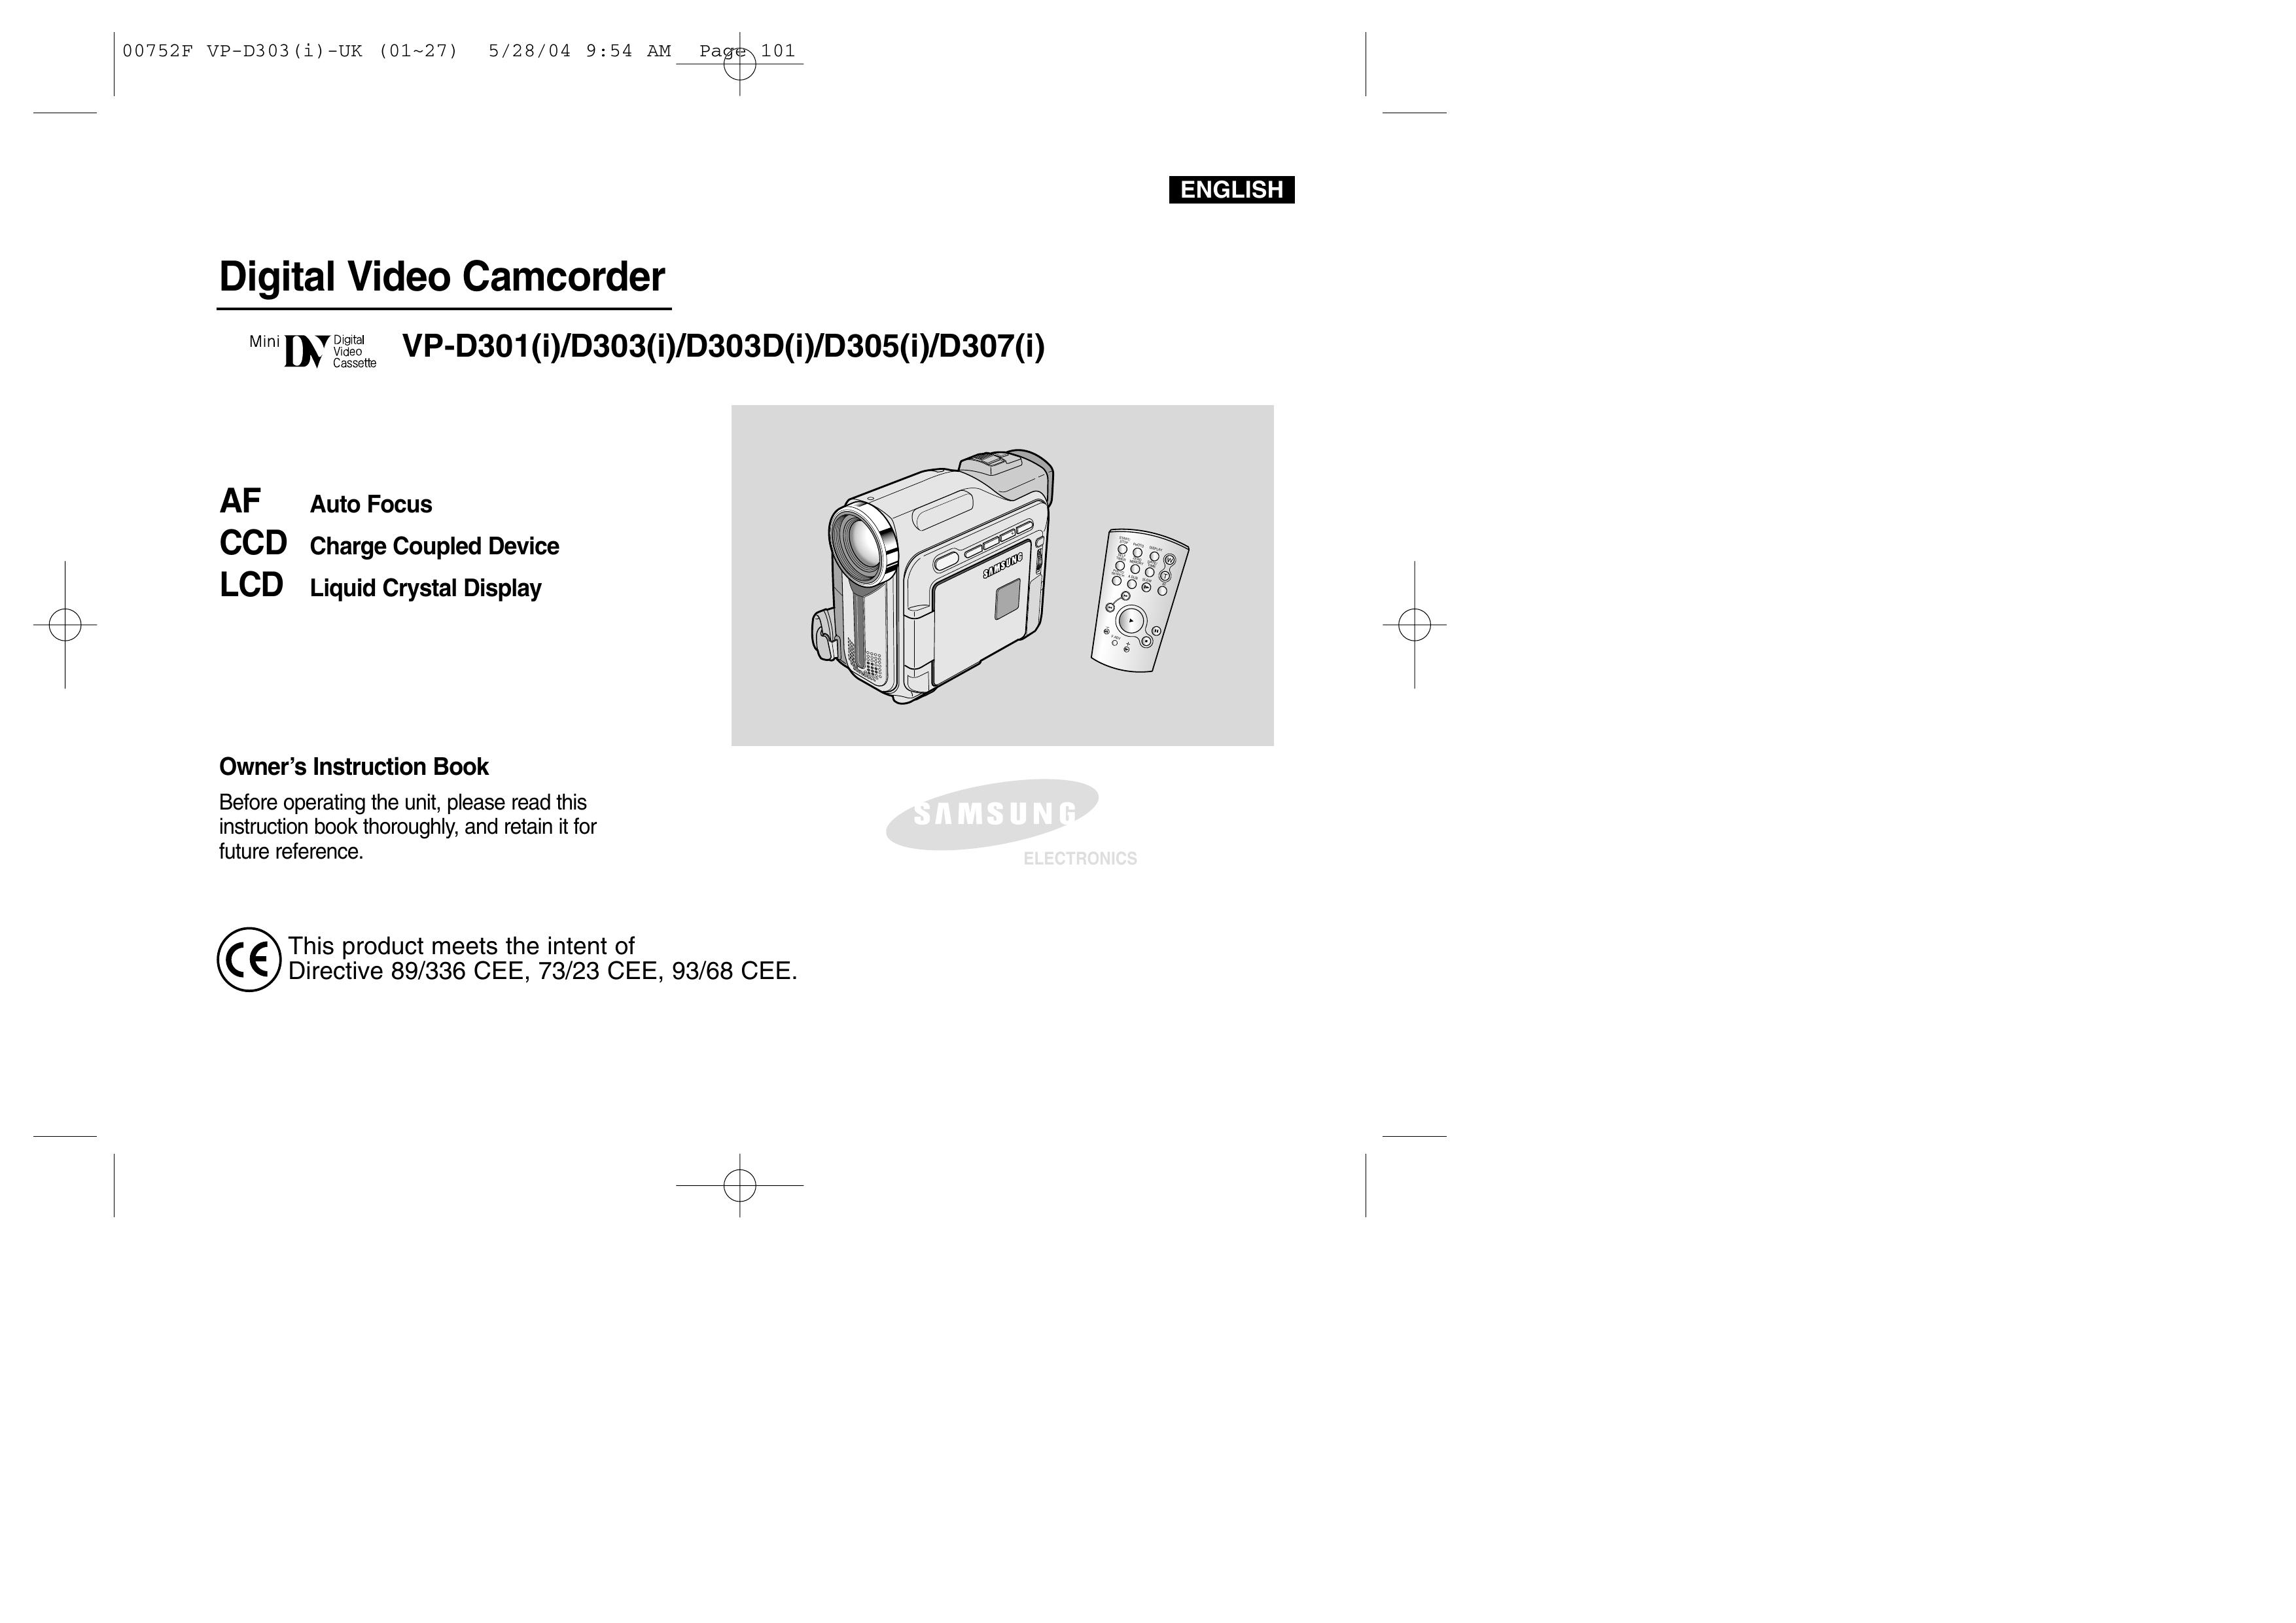 Samsung D305(i) Camcorder User Manual